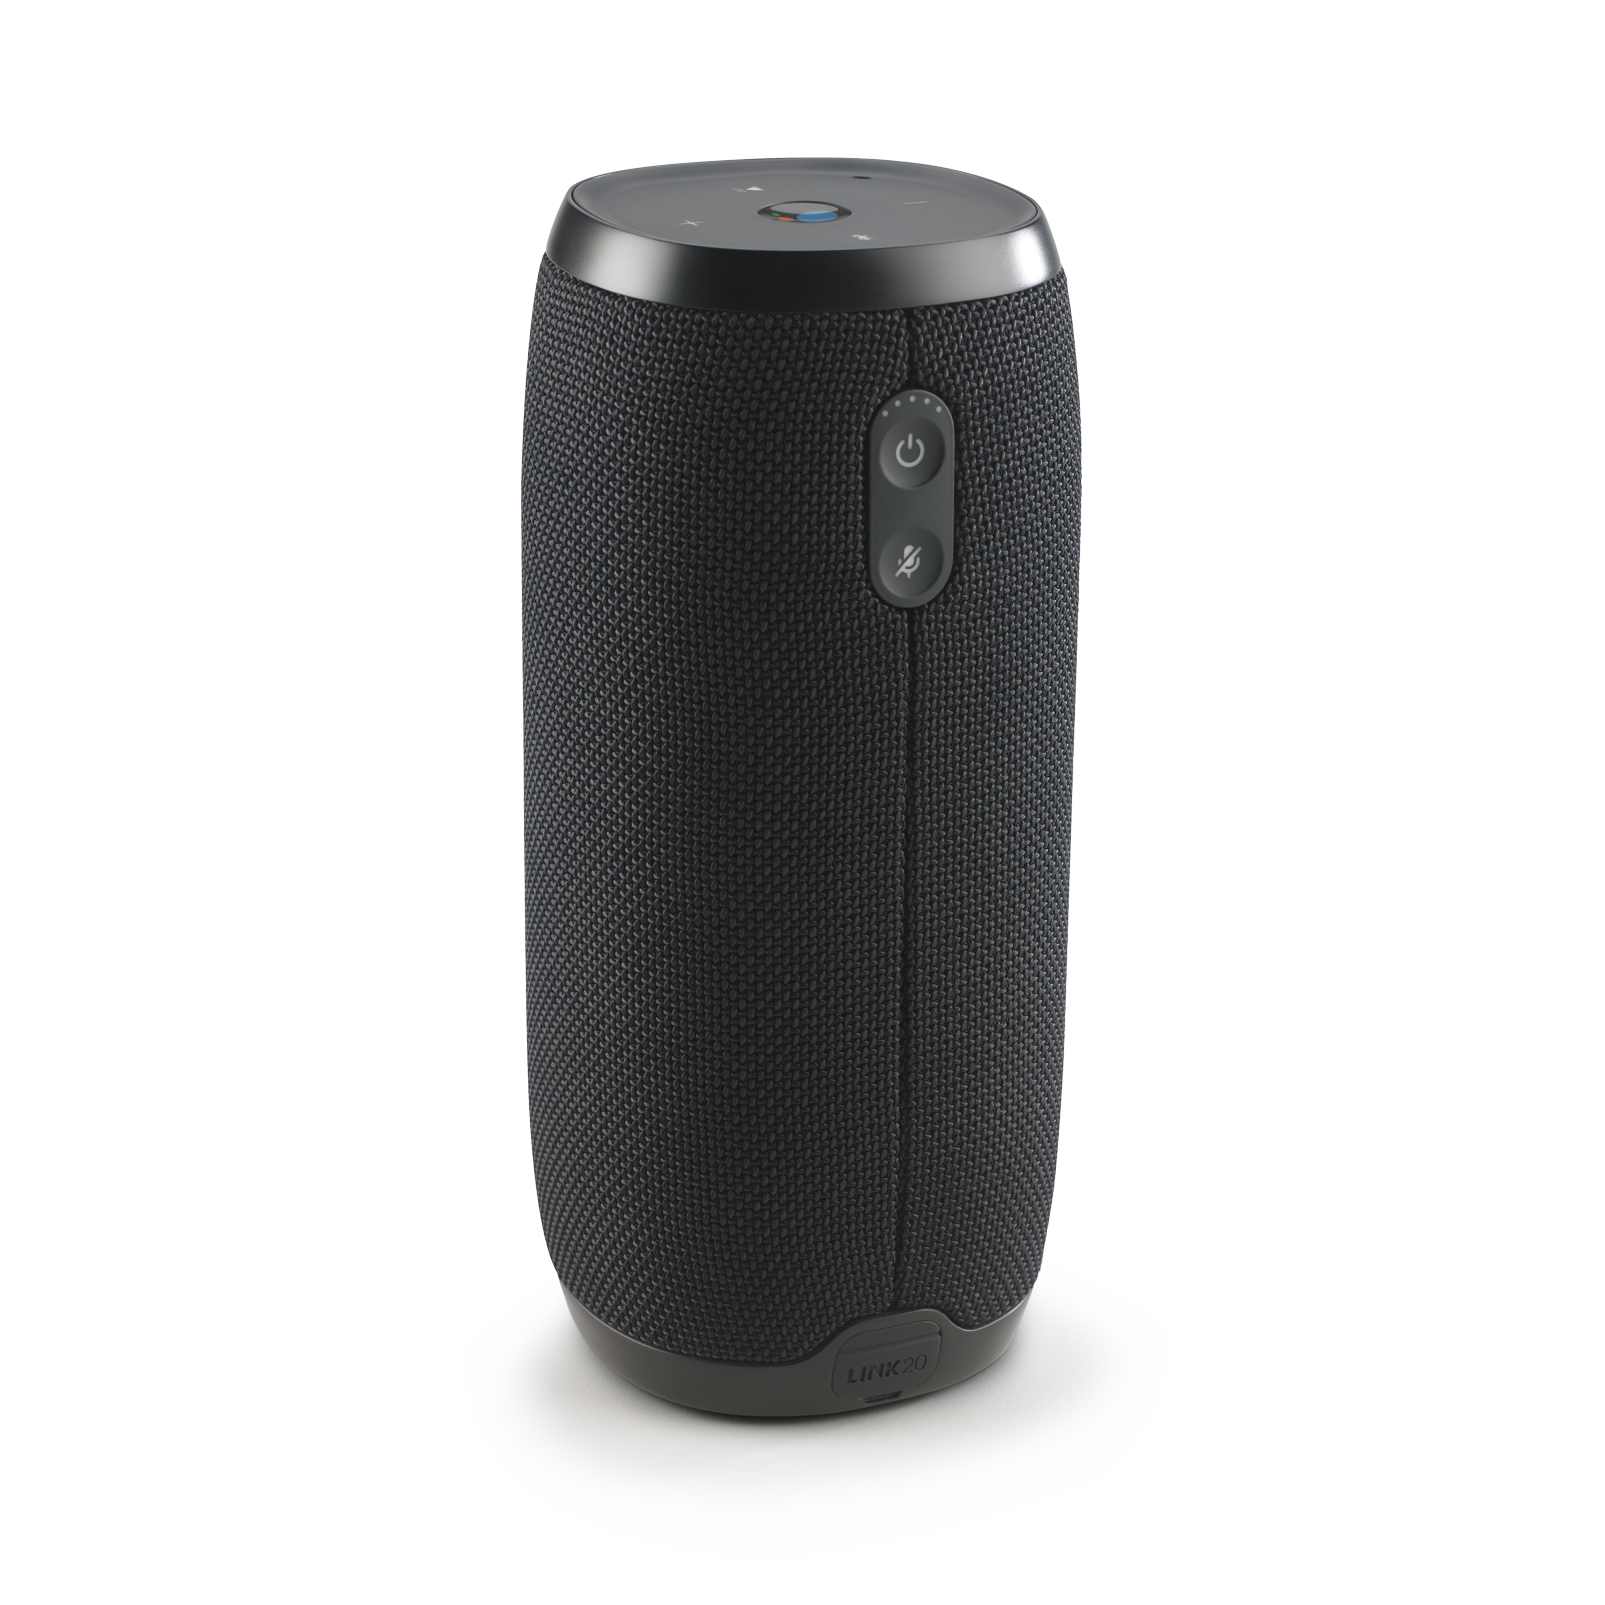 JBL Link 20 - Black - Voice-activated portable speaker - Back